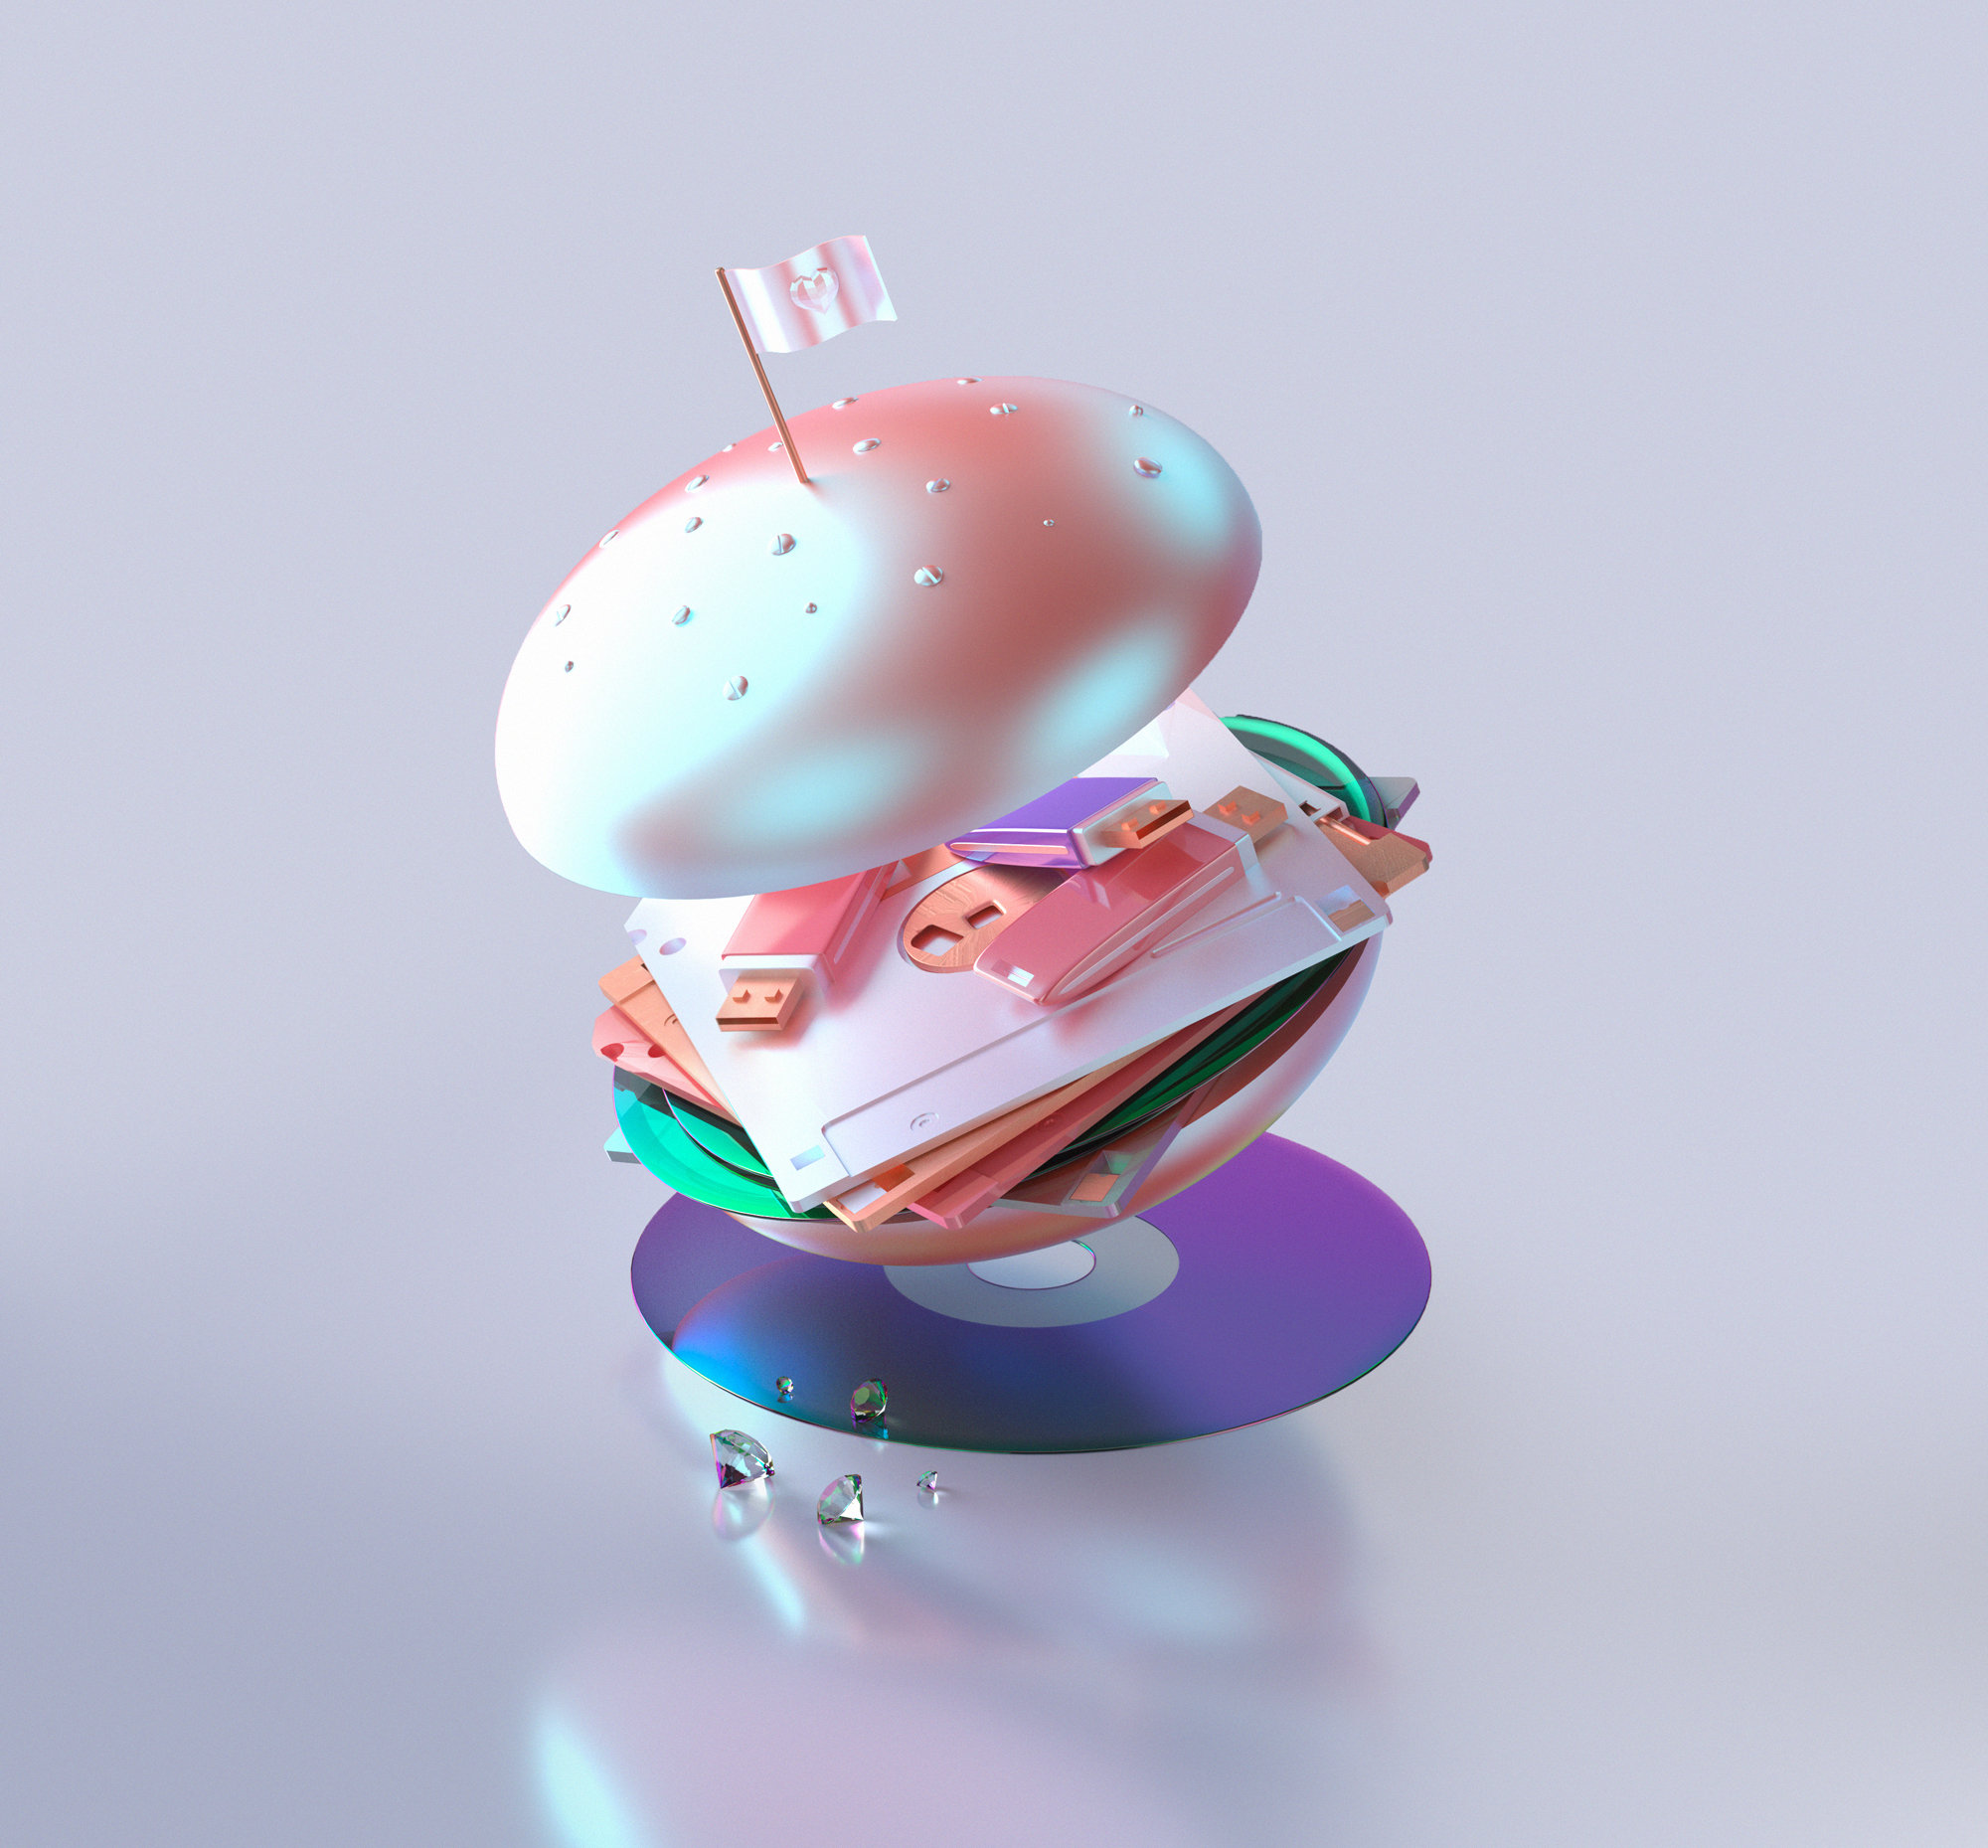 mcCyber hamburger, 3d art, technology